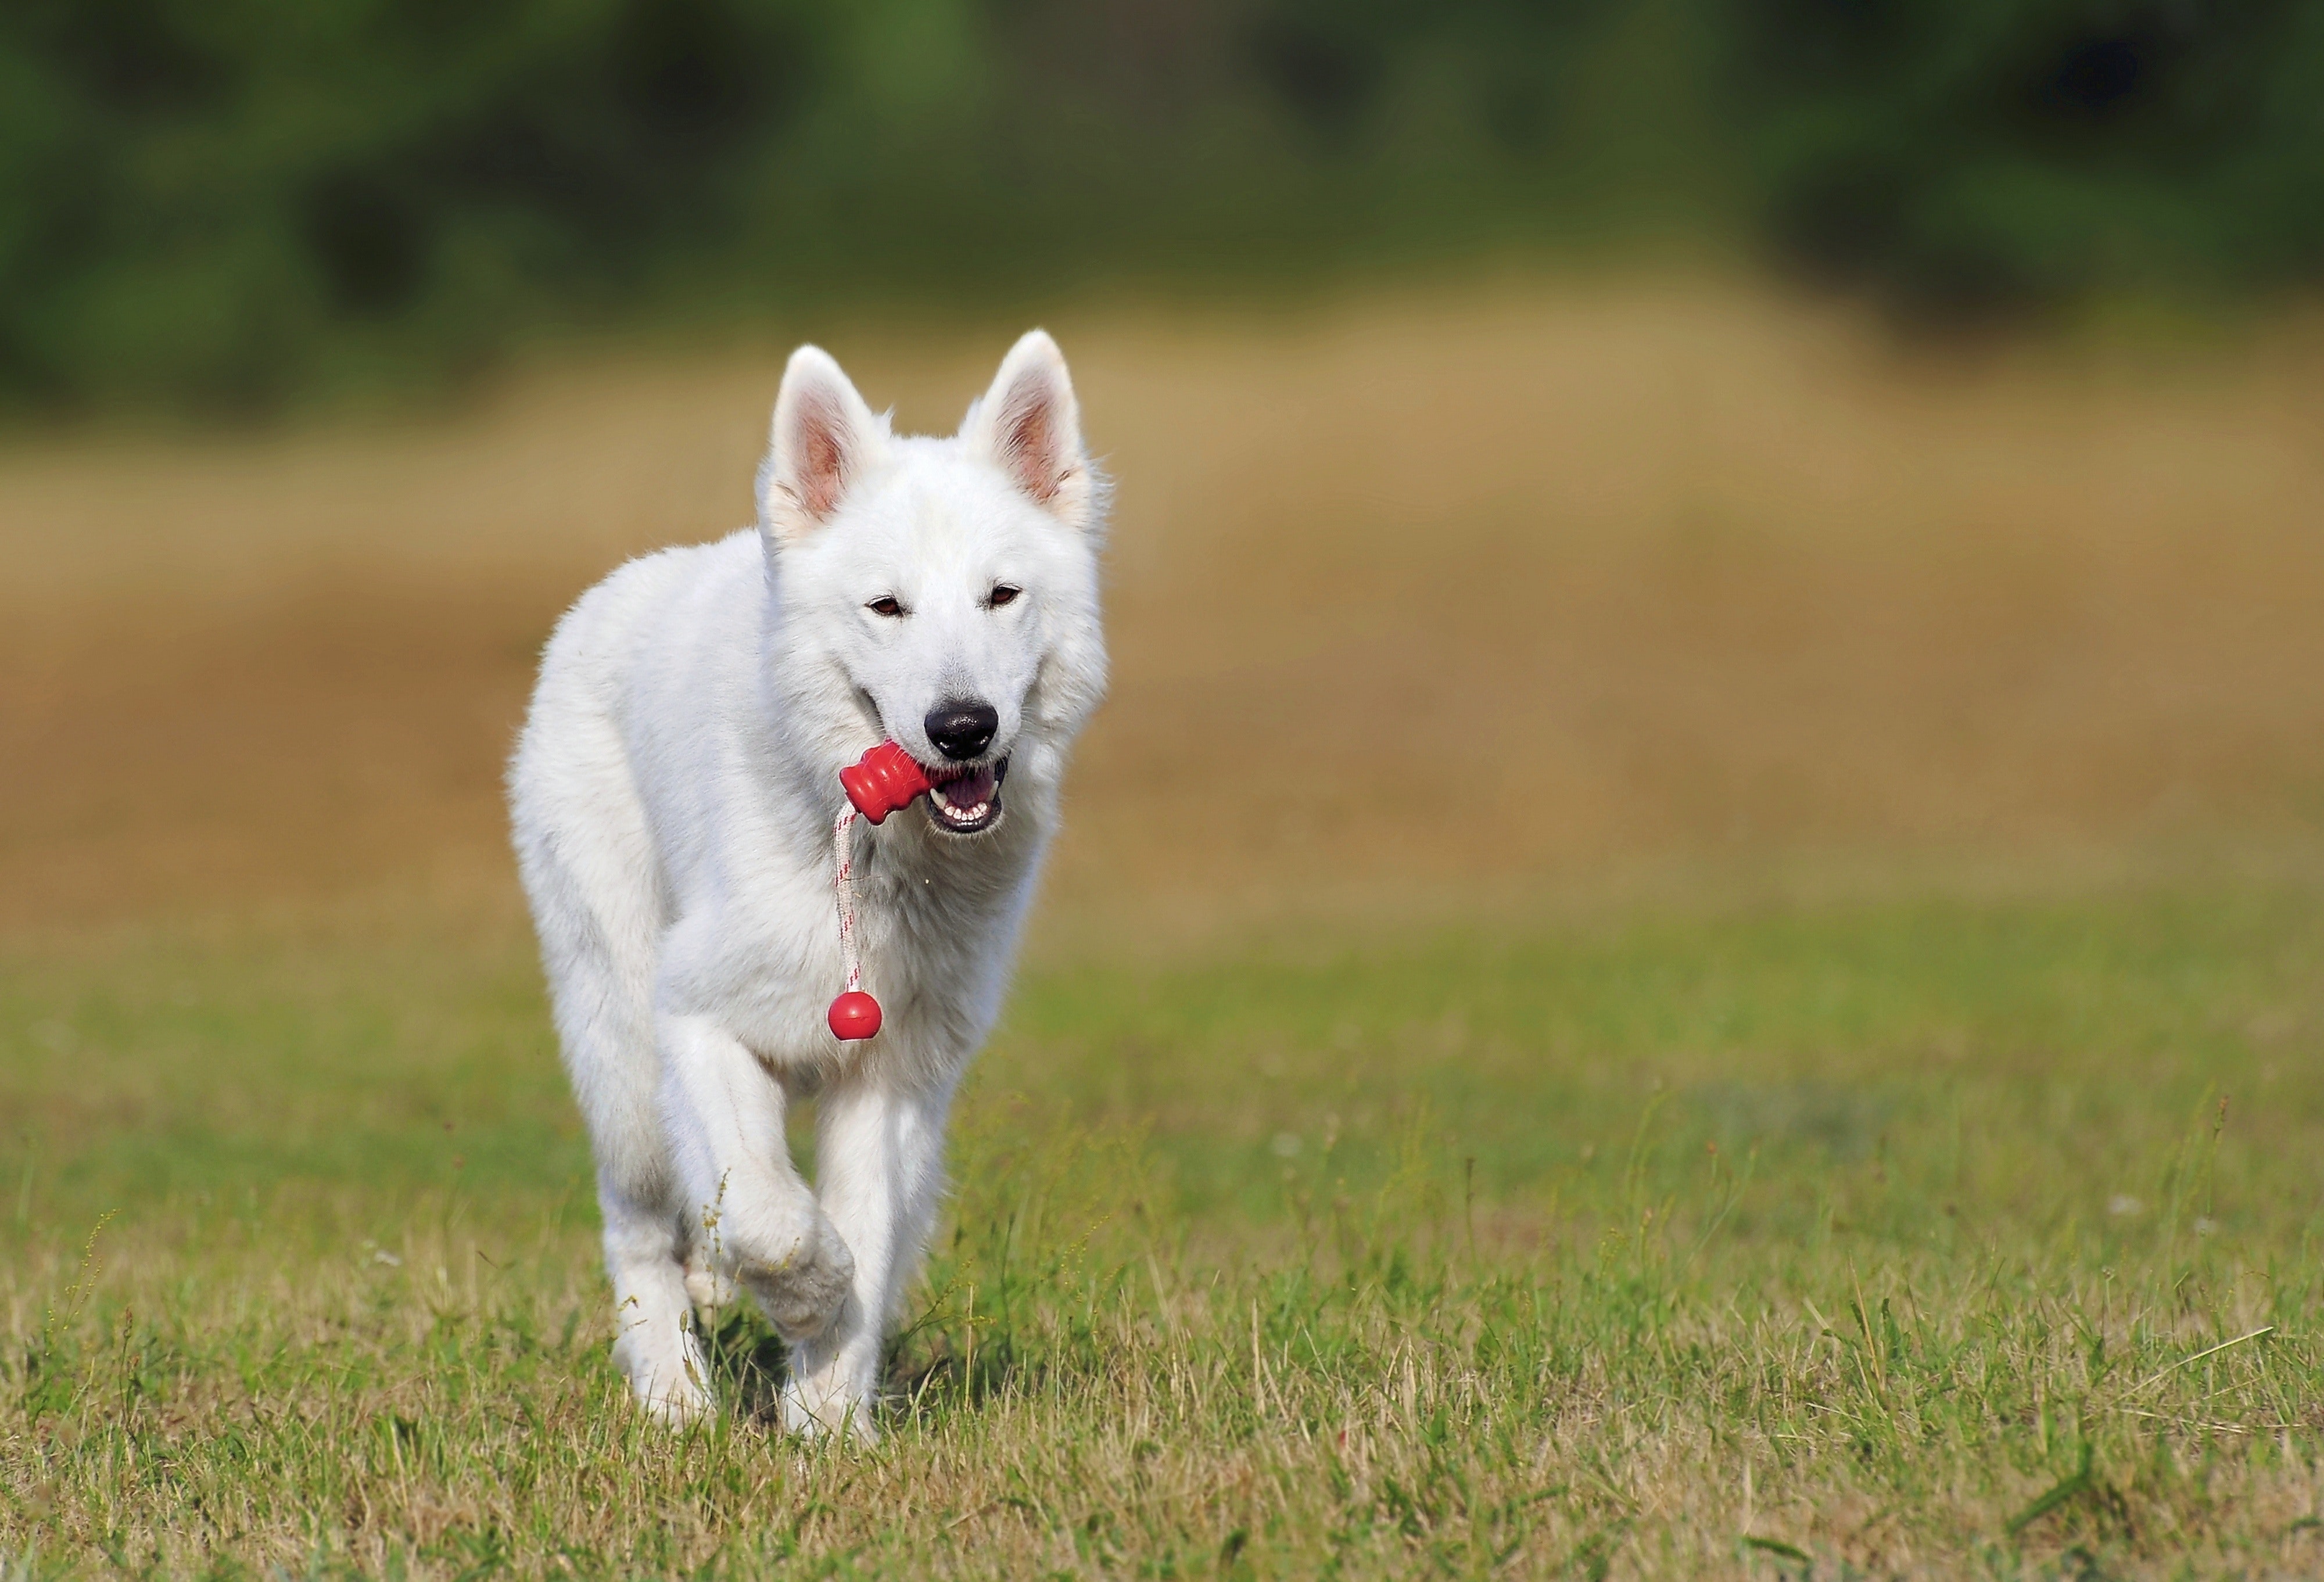 pexels pixabay 46523 10 Normal Habits That Could Endanger Your Dog